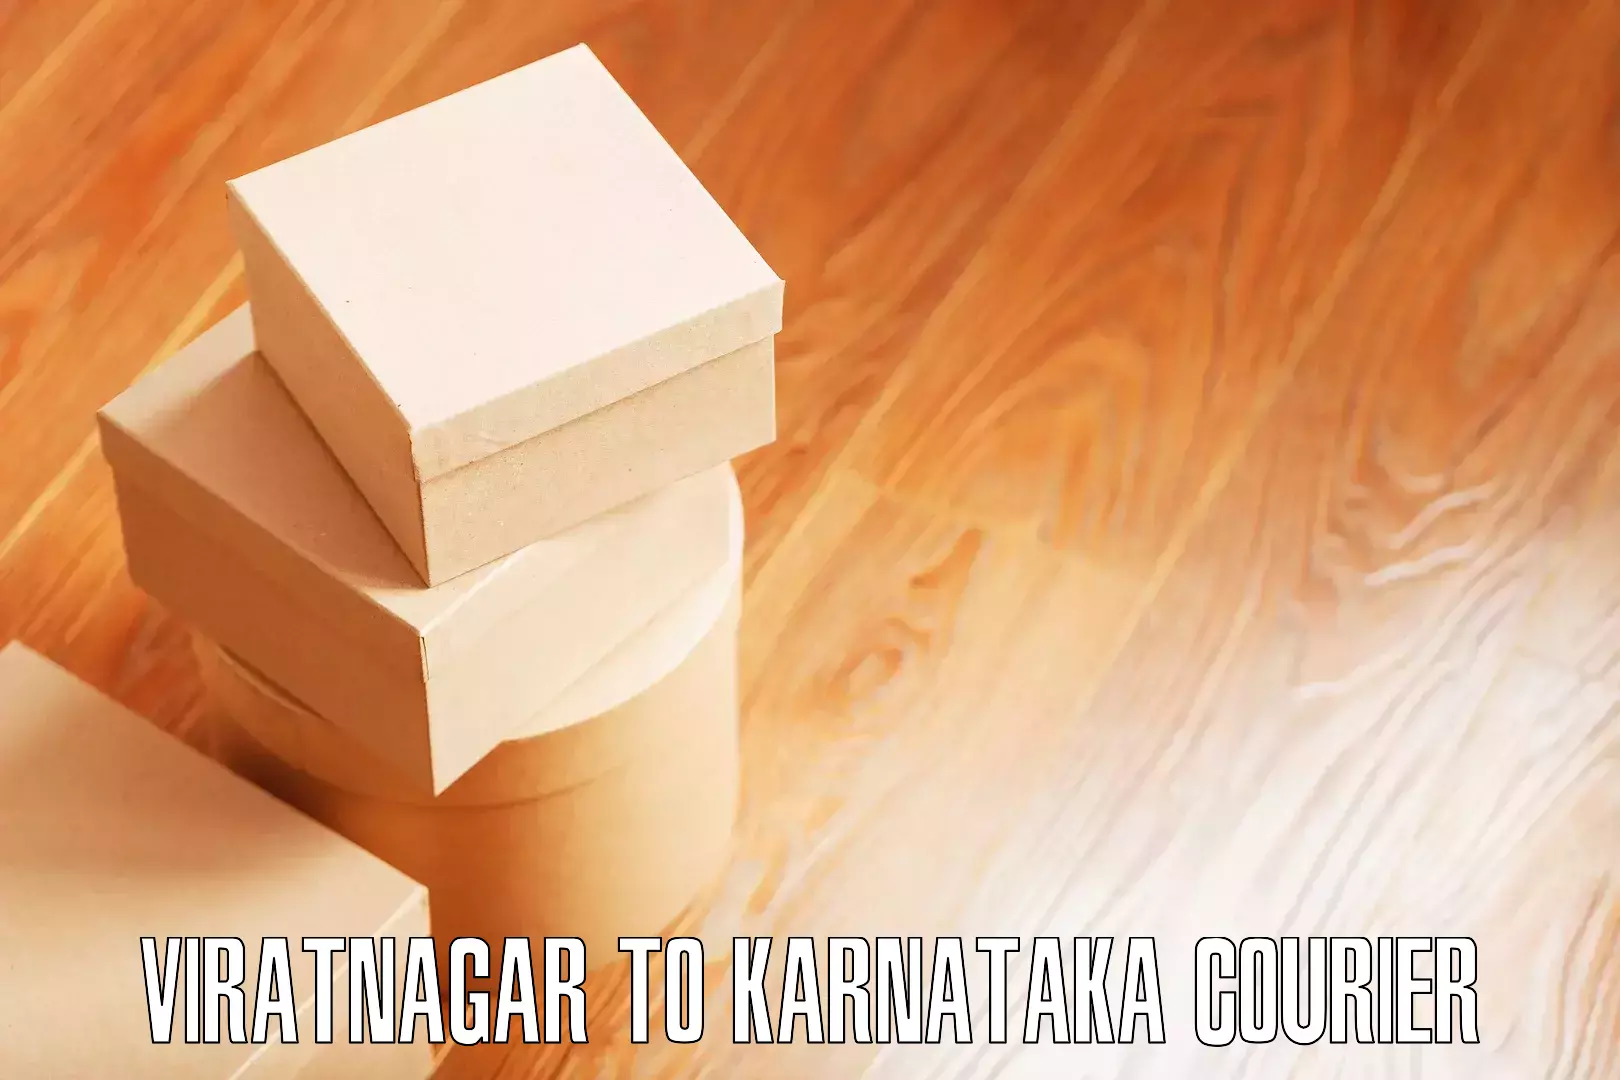 Quality furniture shipping in Viratnagar to Vijayapura